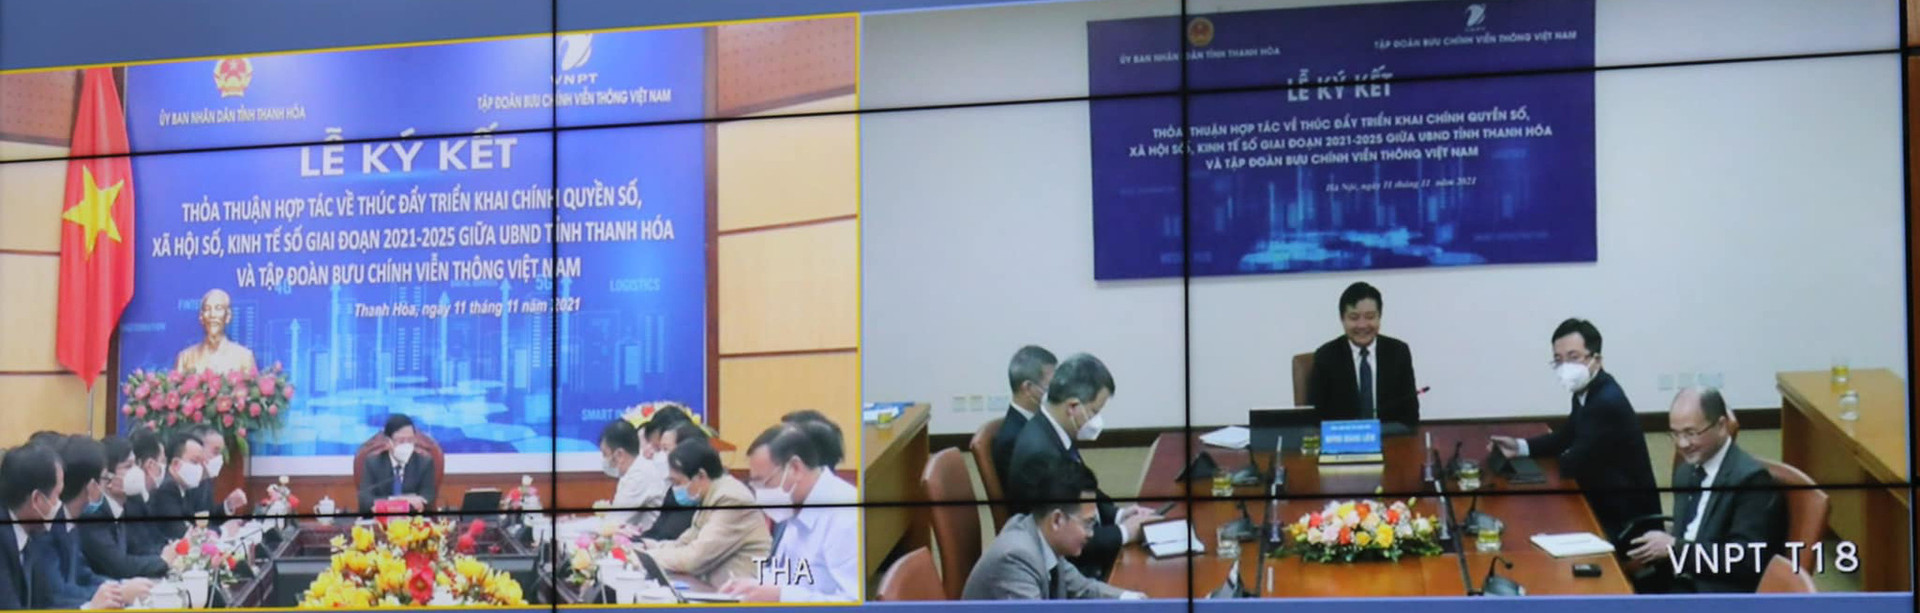 VNPT và UBND tỉnh Thanh Hóa tiếp tục thúc đẩy triển khai chính quyền số, xã hội số, kinh tế số - Ảnh 1.